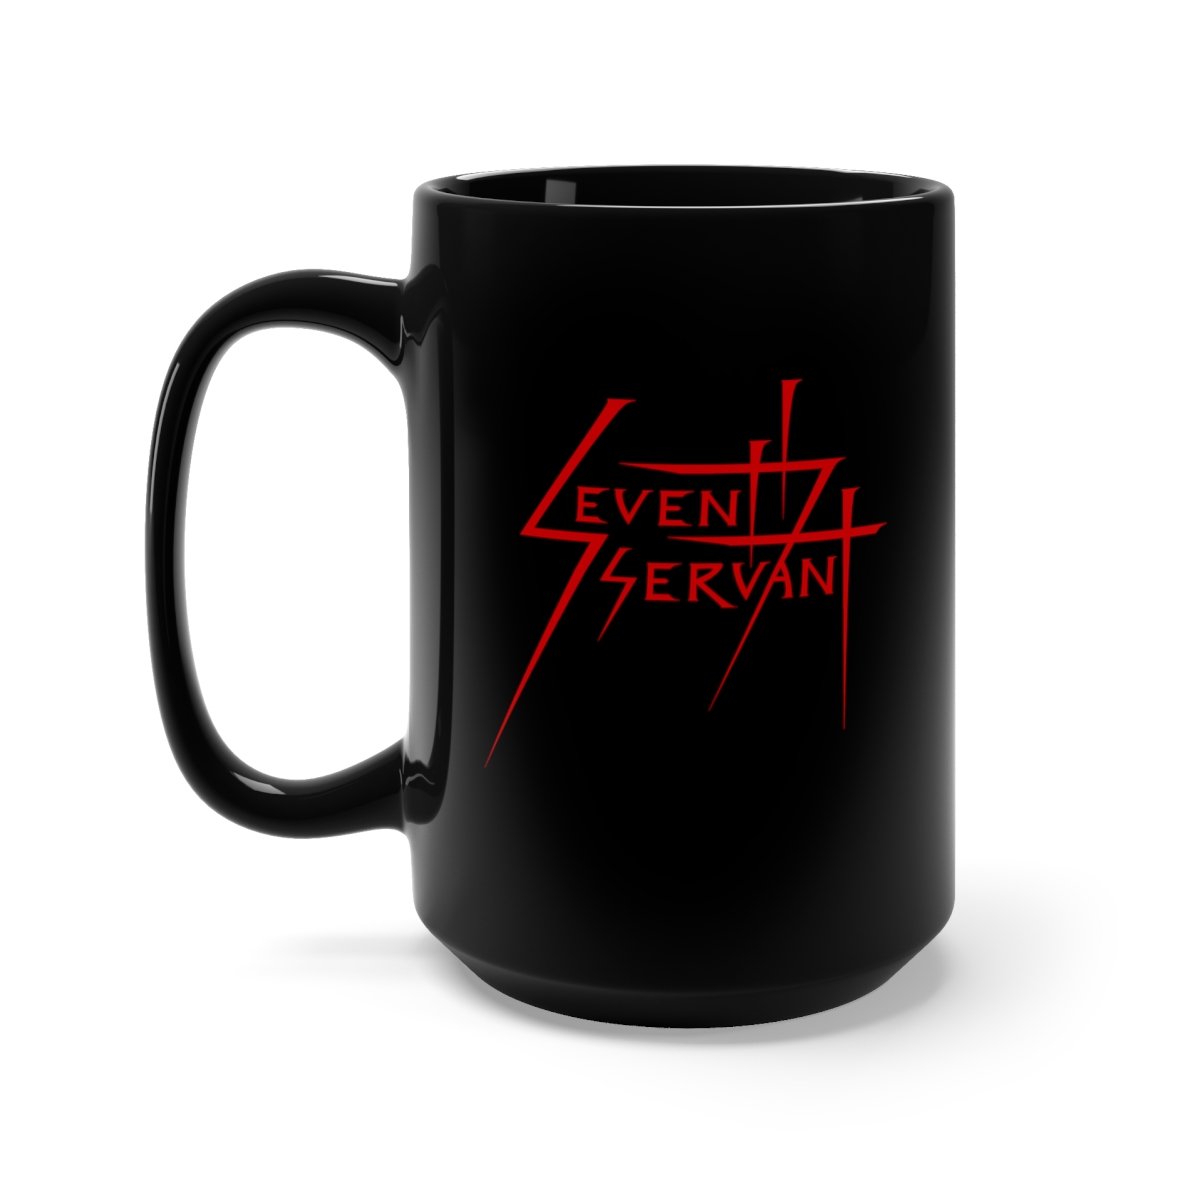 Seventh Servant Classic Logo 15oz Black Mug